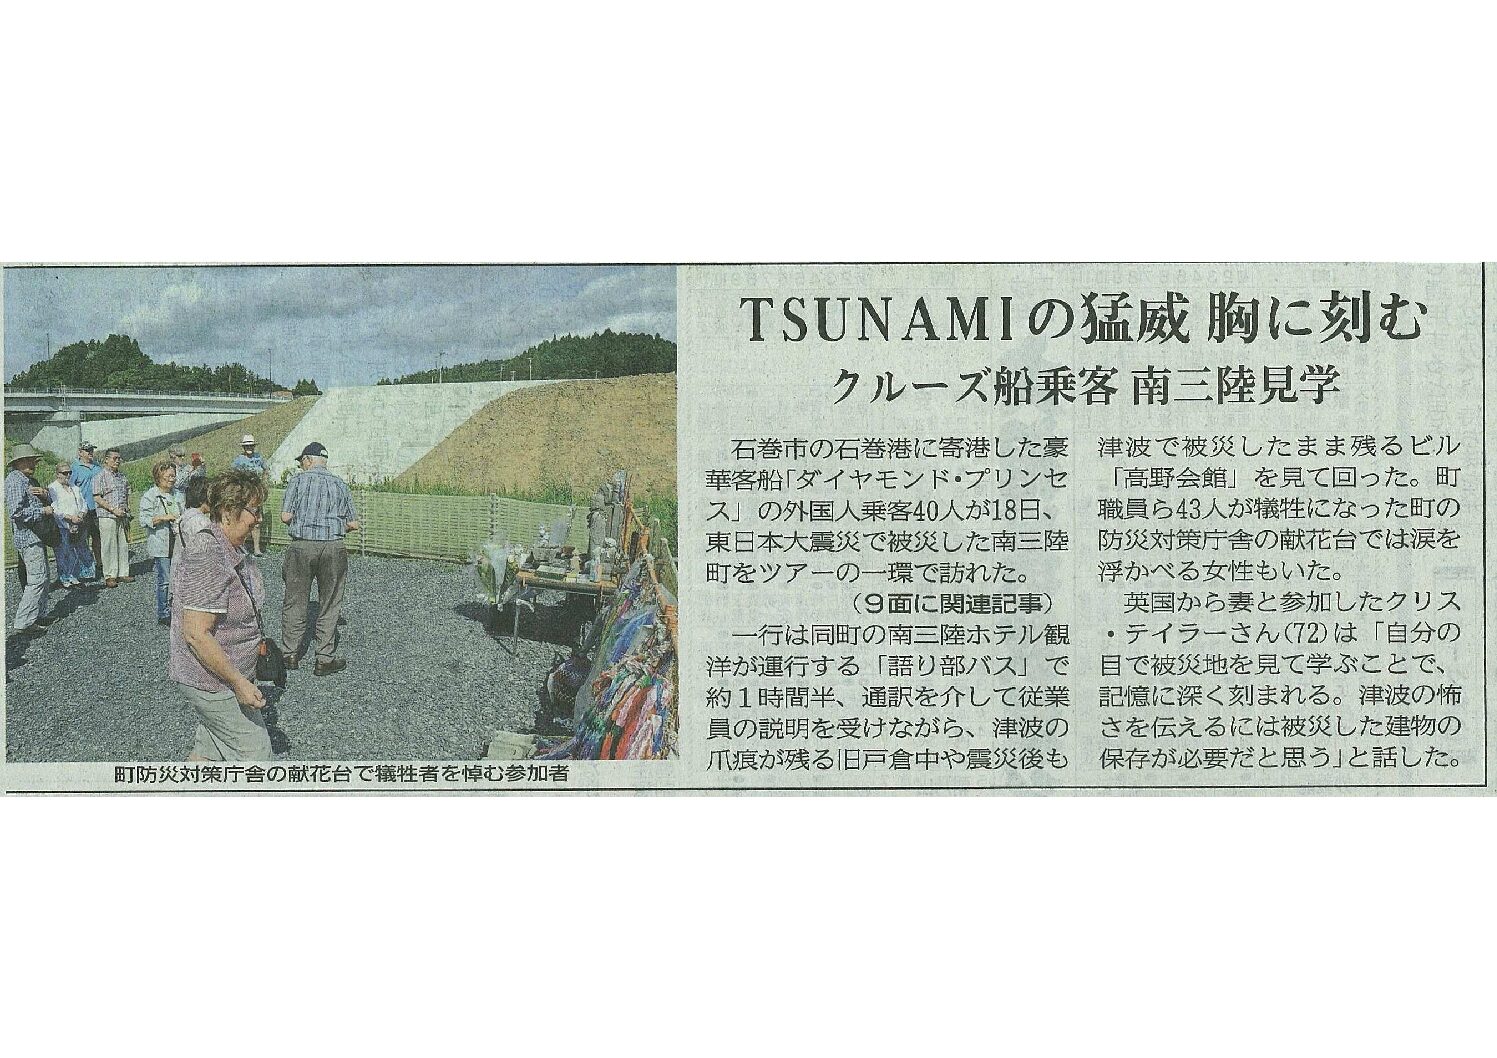 2018/9/19　【河北新報】TSUNAMIの猛威 胸に刻む